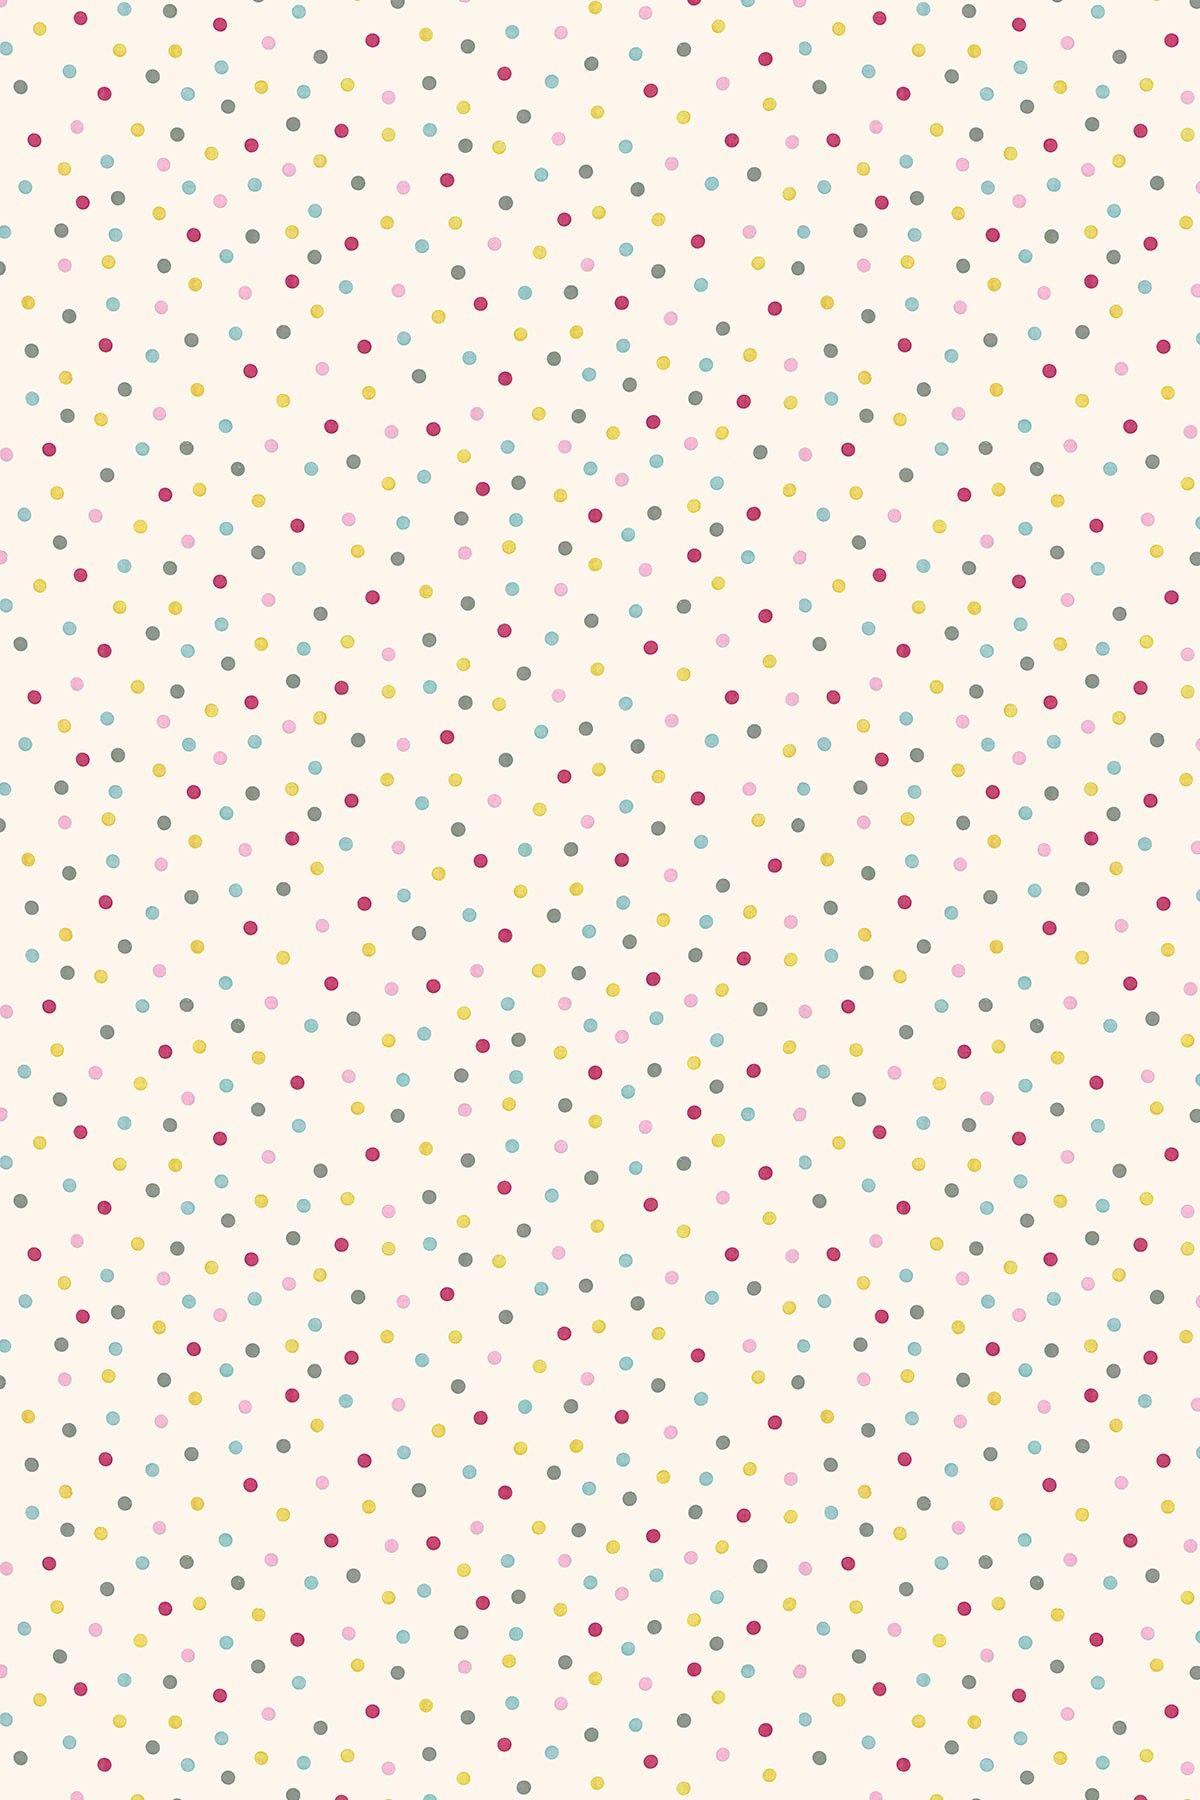 Polka Dot Phone Wallpapers - Top Những Hình Ảnh Đẹp